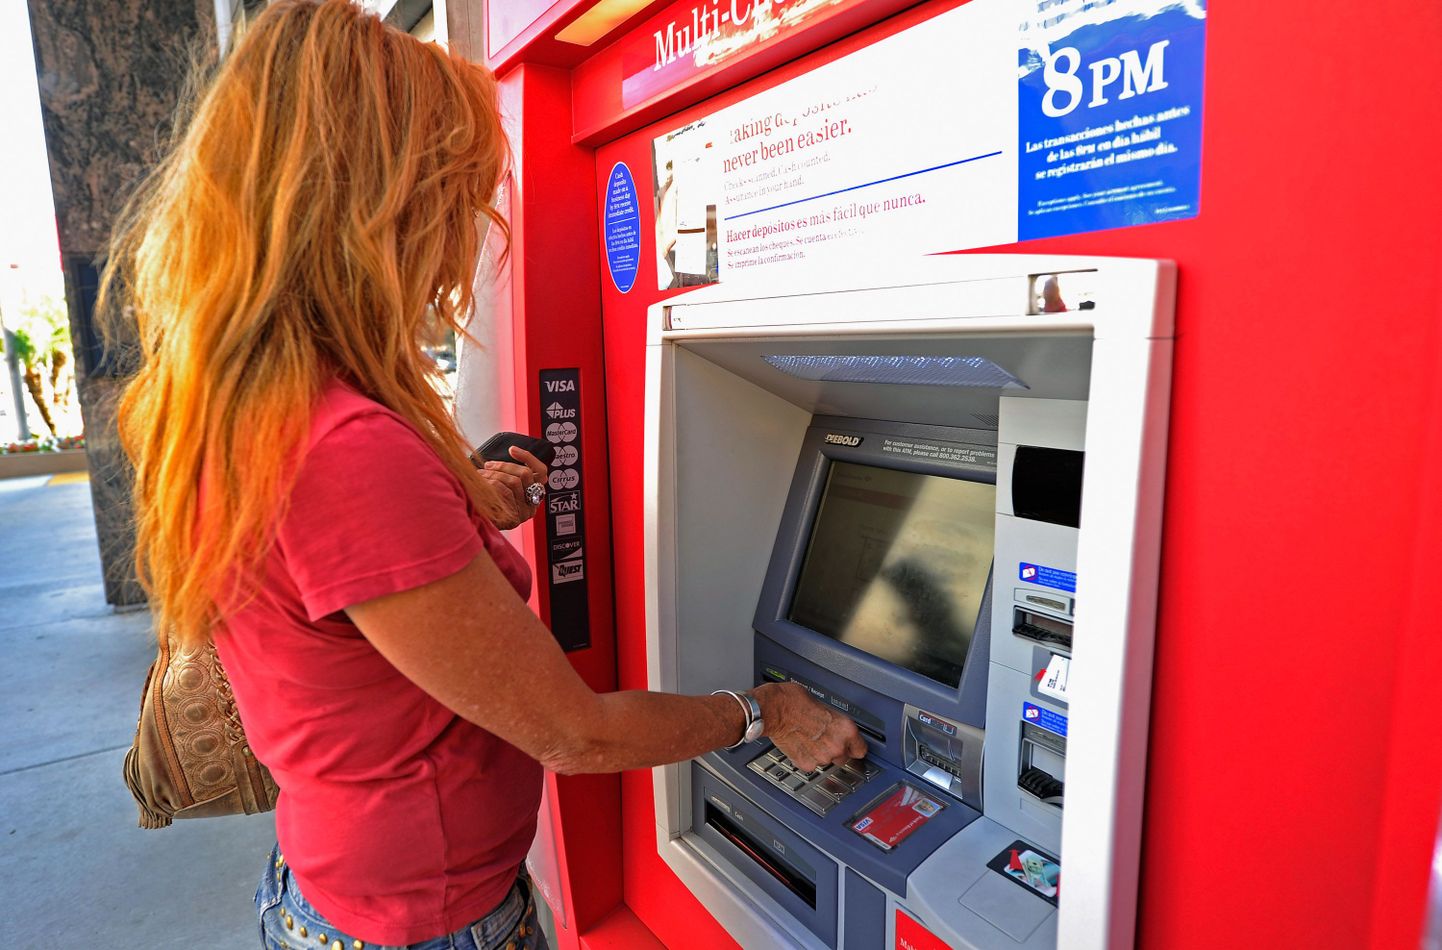 USA pangad hakkavad deebetkaartide kasutamise eest tasu küsima.